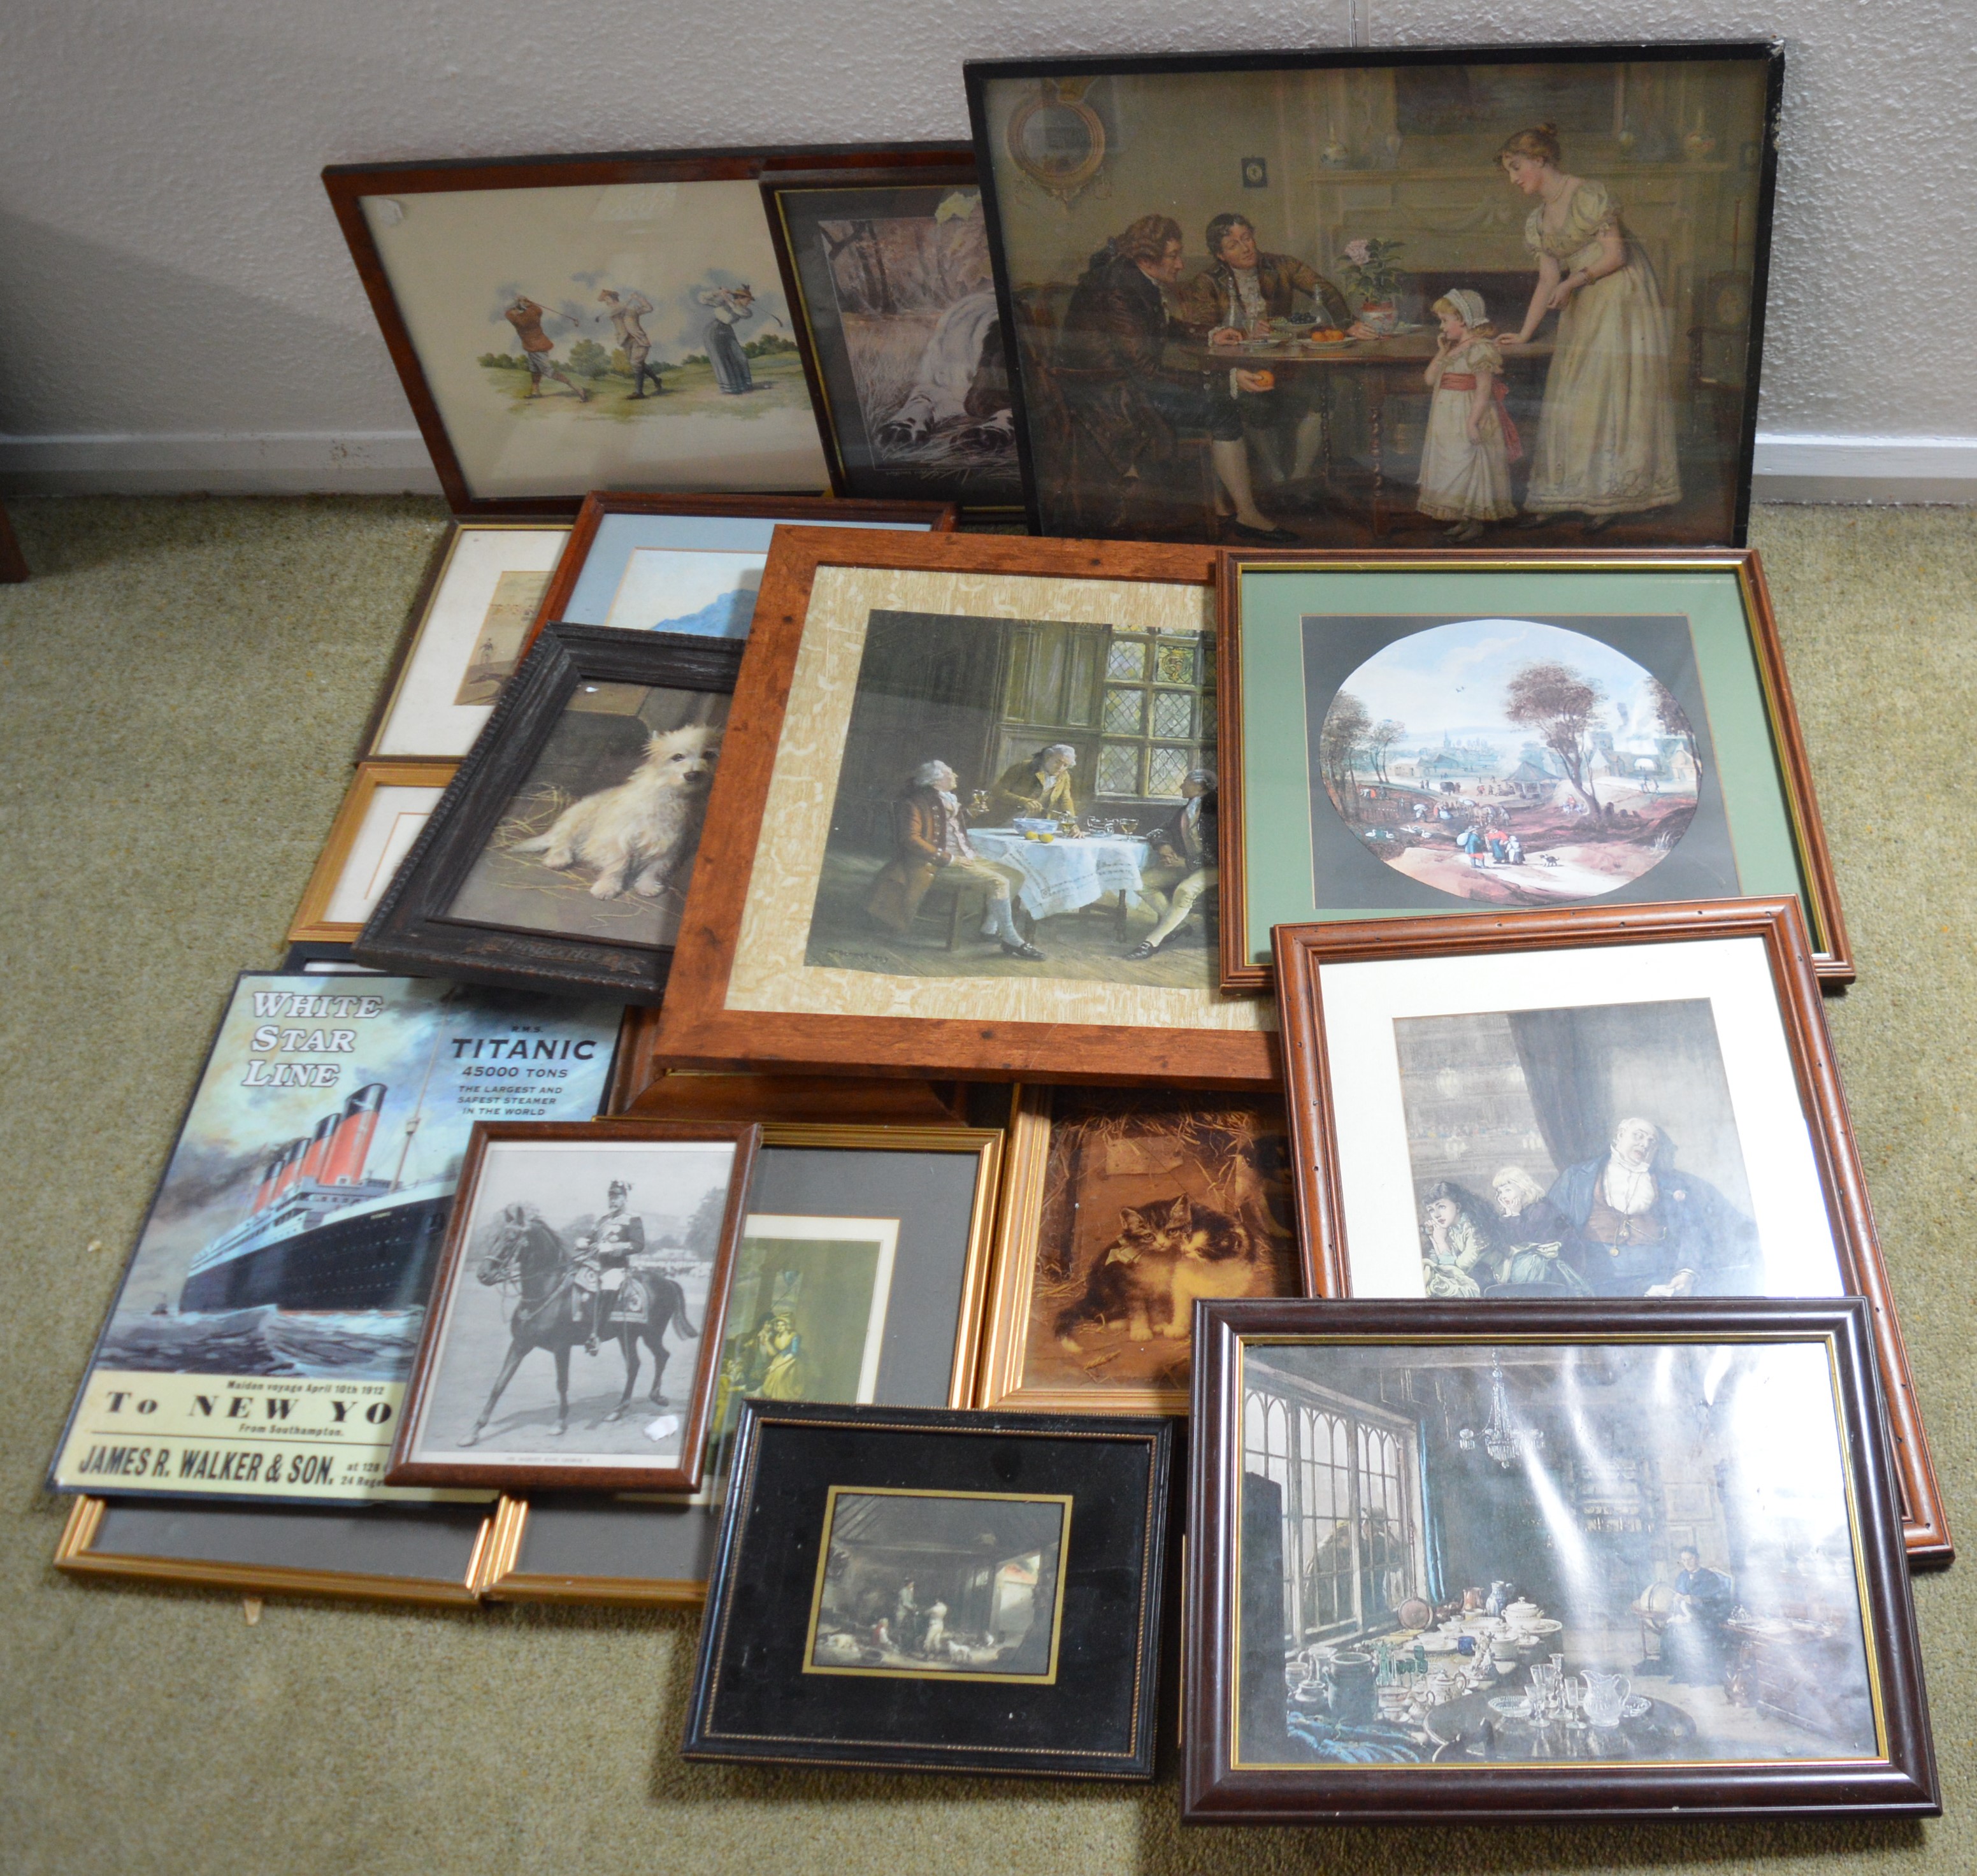 Selection of framed prints